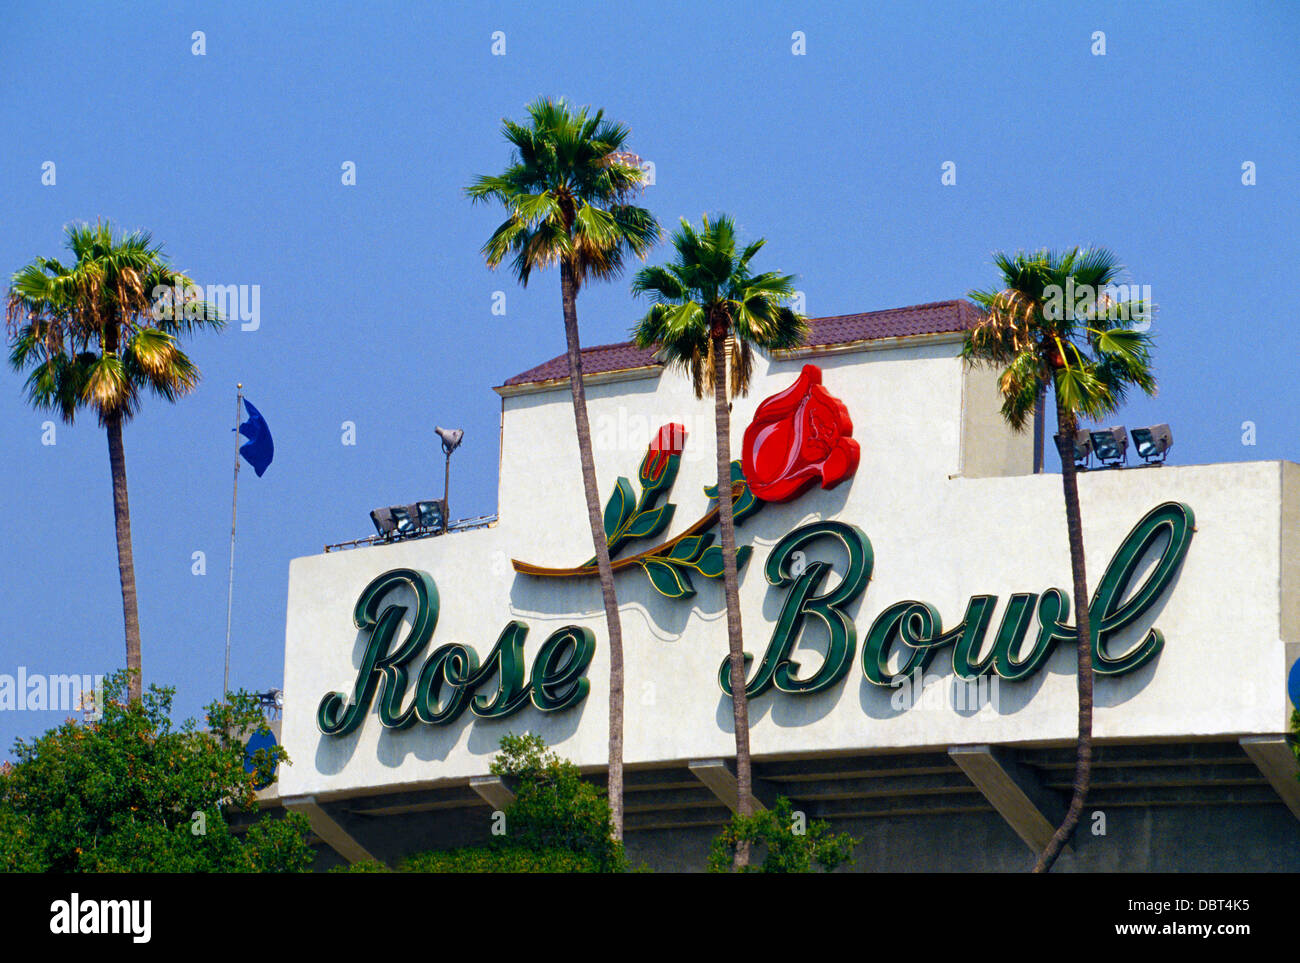 Un segno colorato accoglie favorevolmente le ventole per il Rose Bowl, una piscina stadio atletico famosa per il collegio di calcio il giorno di Capodanno a Pasadena, California, Stati Uniti d'America Foto Stock